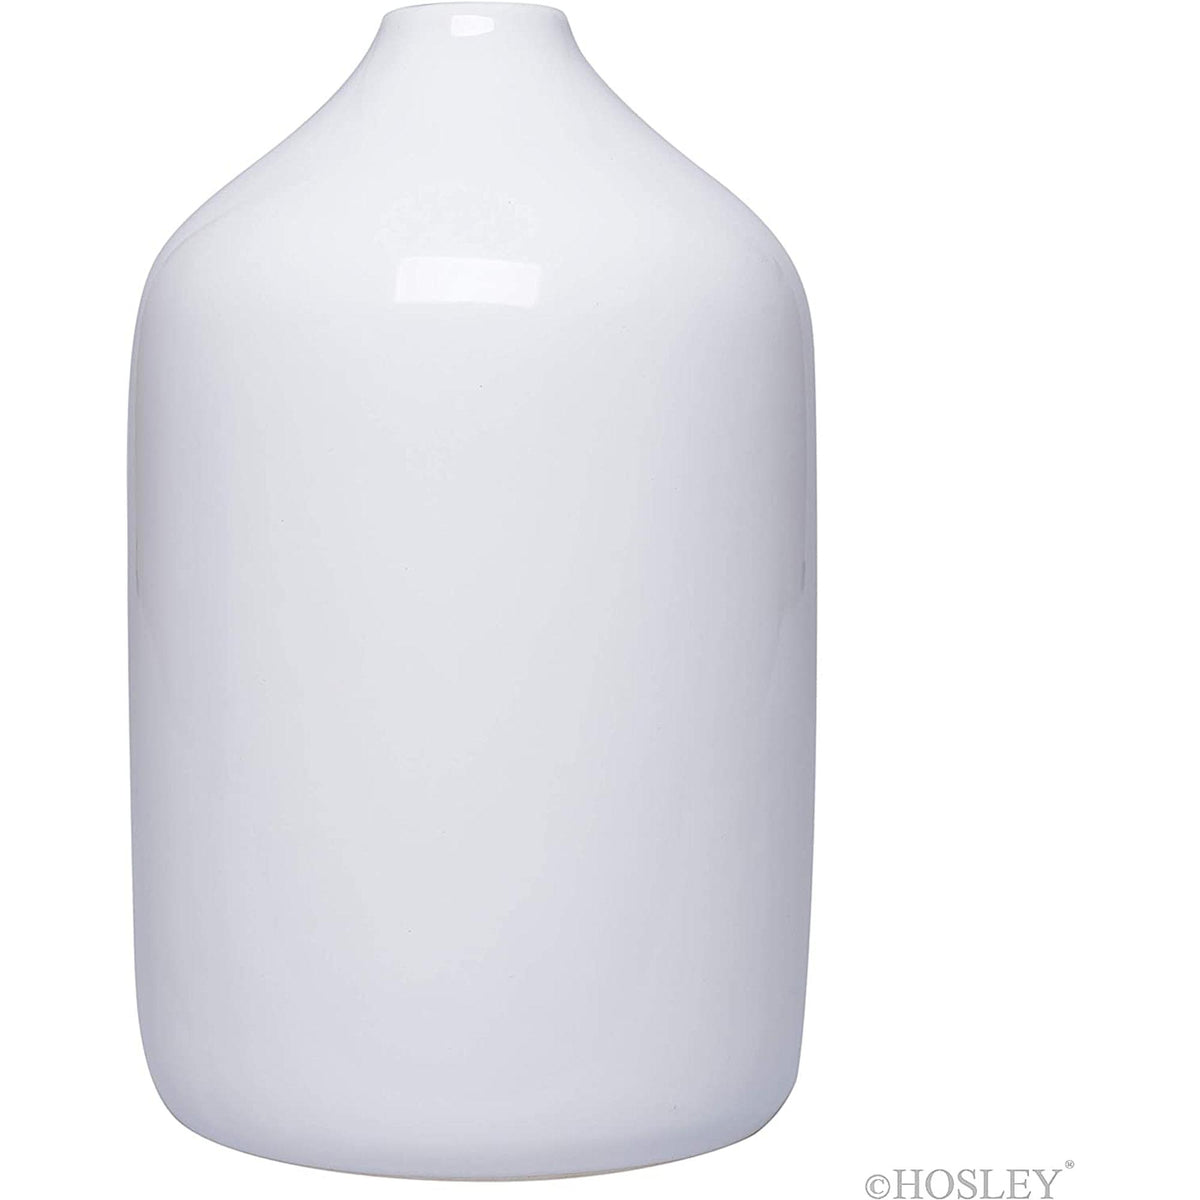 HOSLEY® Ceramic Vase,White Glazed, 8 inches High